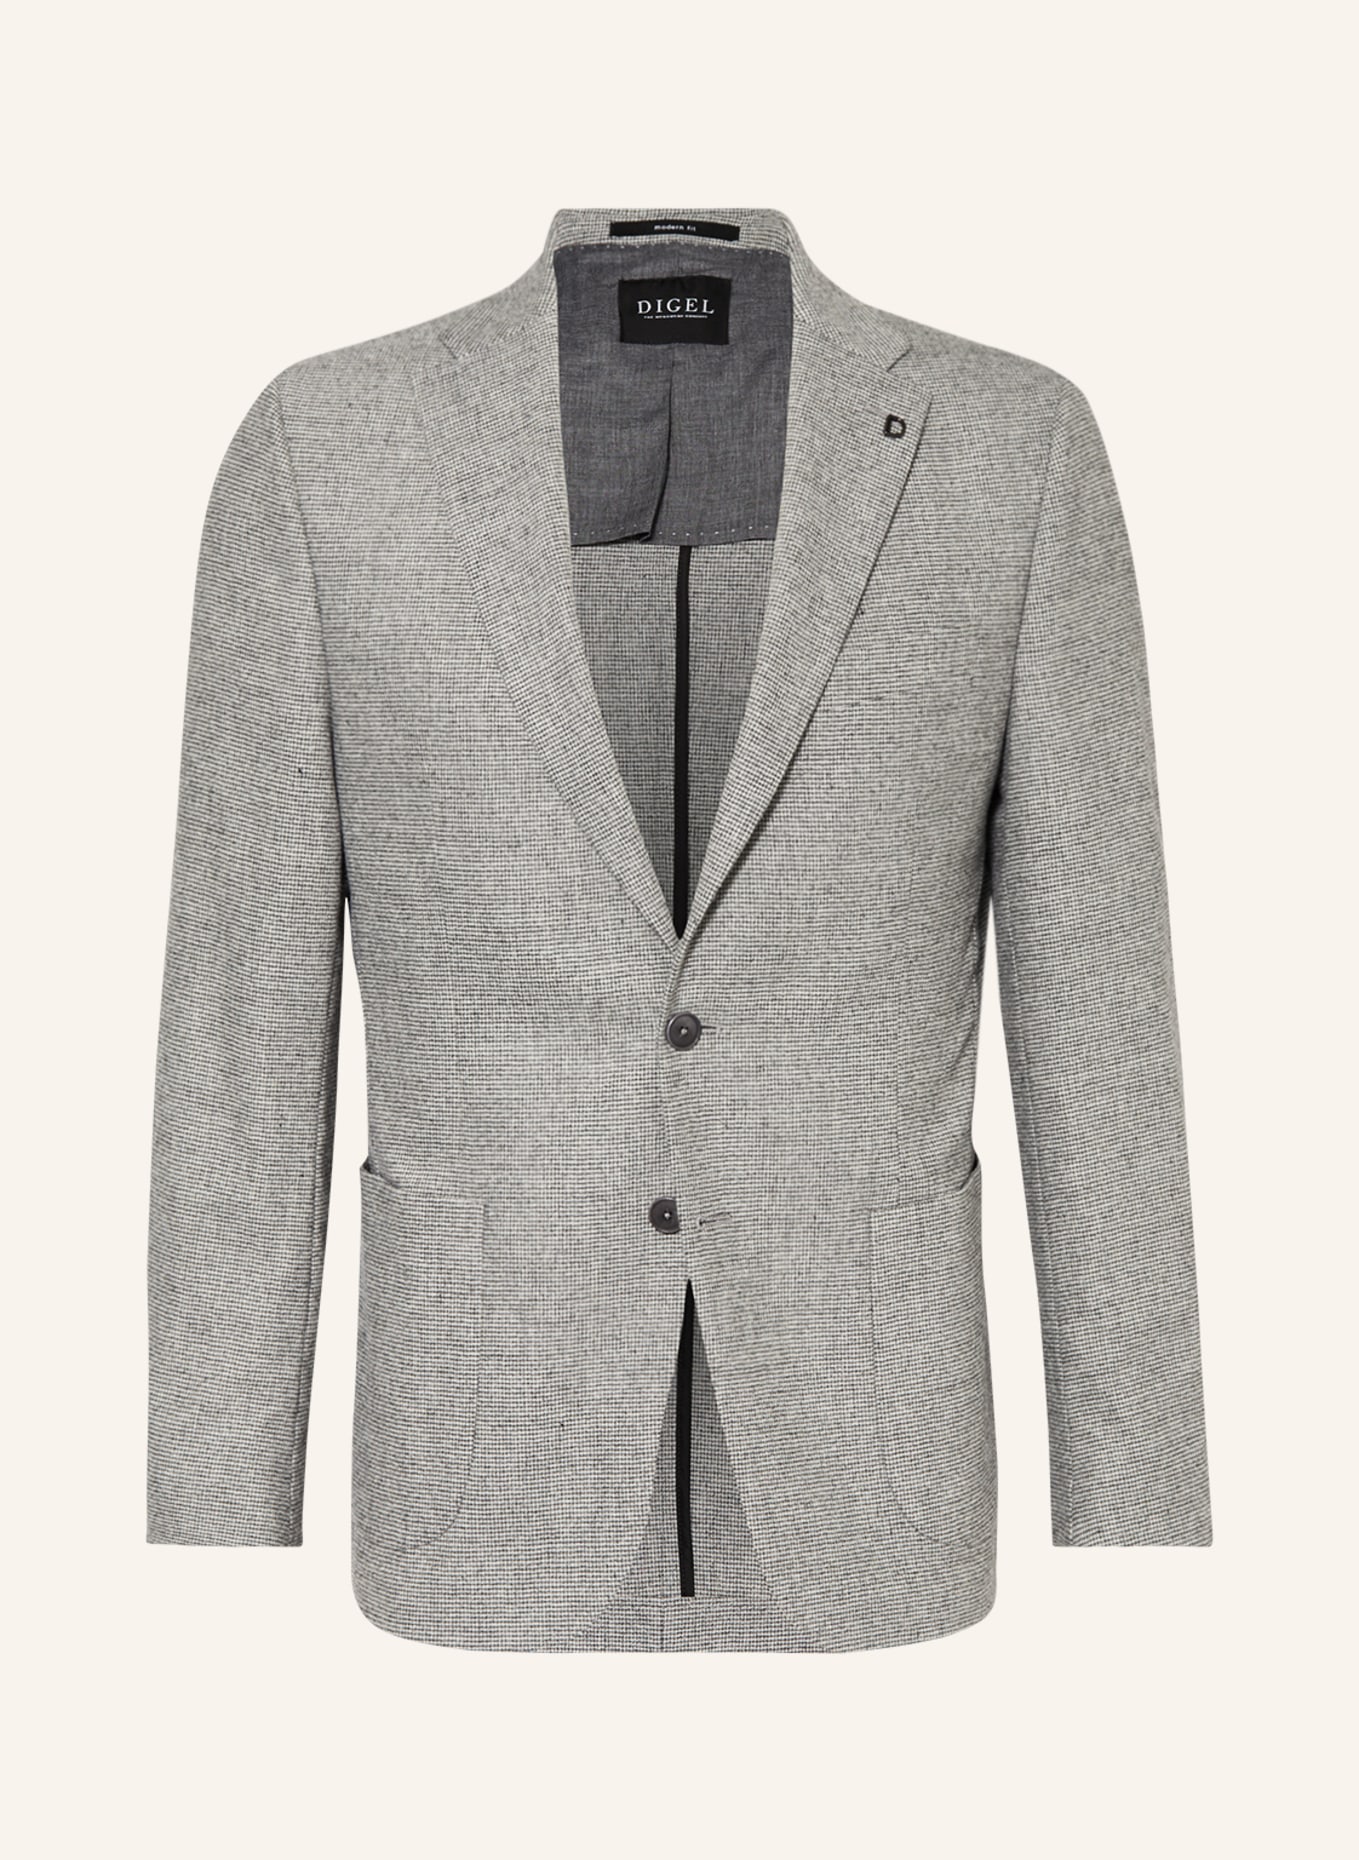 DIGEL Suit jacket EDWARD Regular Fit, Color: 44 GRAU (Image 1)